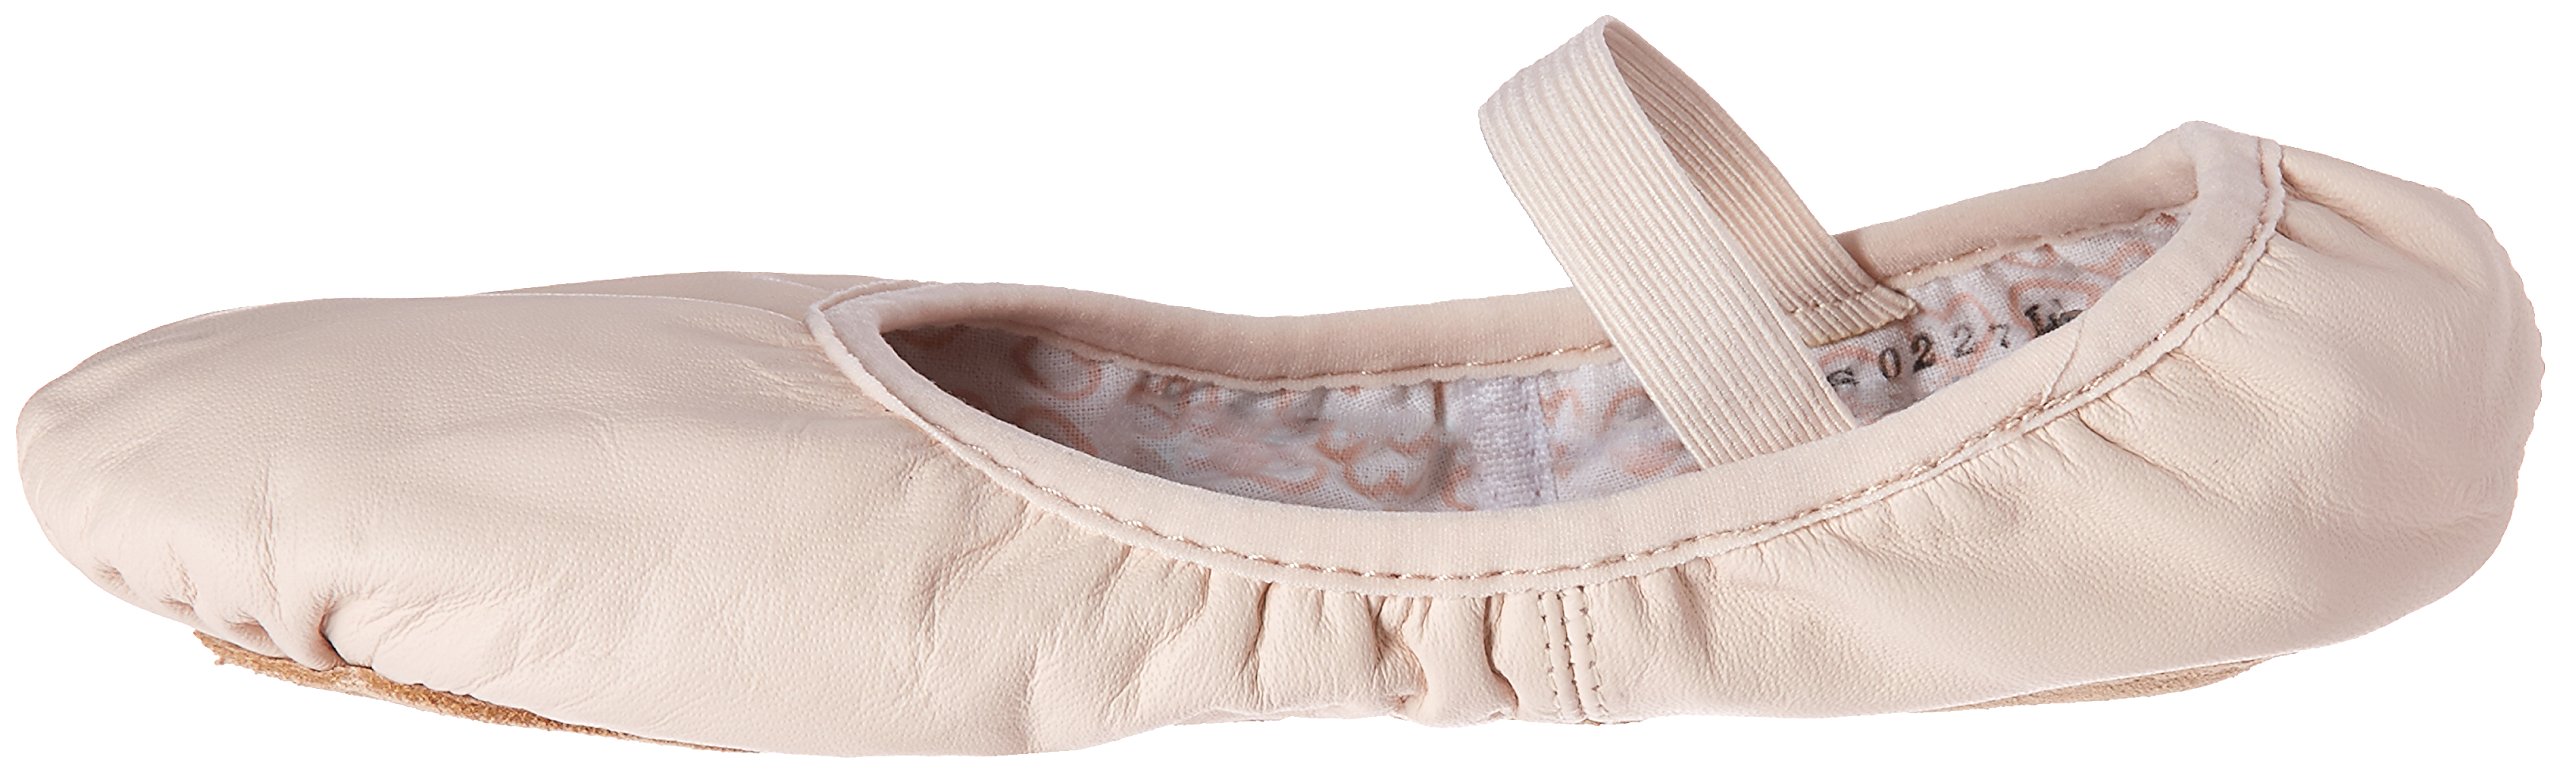 Bloch Women's Dance Belle Full-Sole Leather Ballet Shoe/Slipper